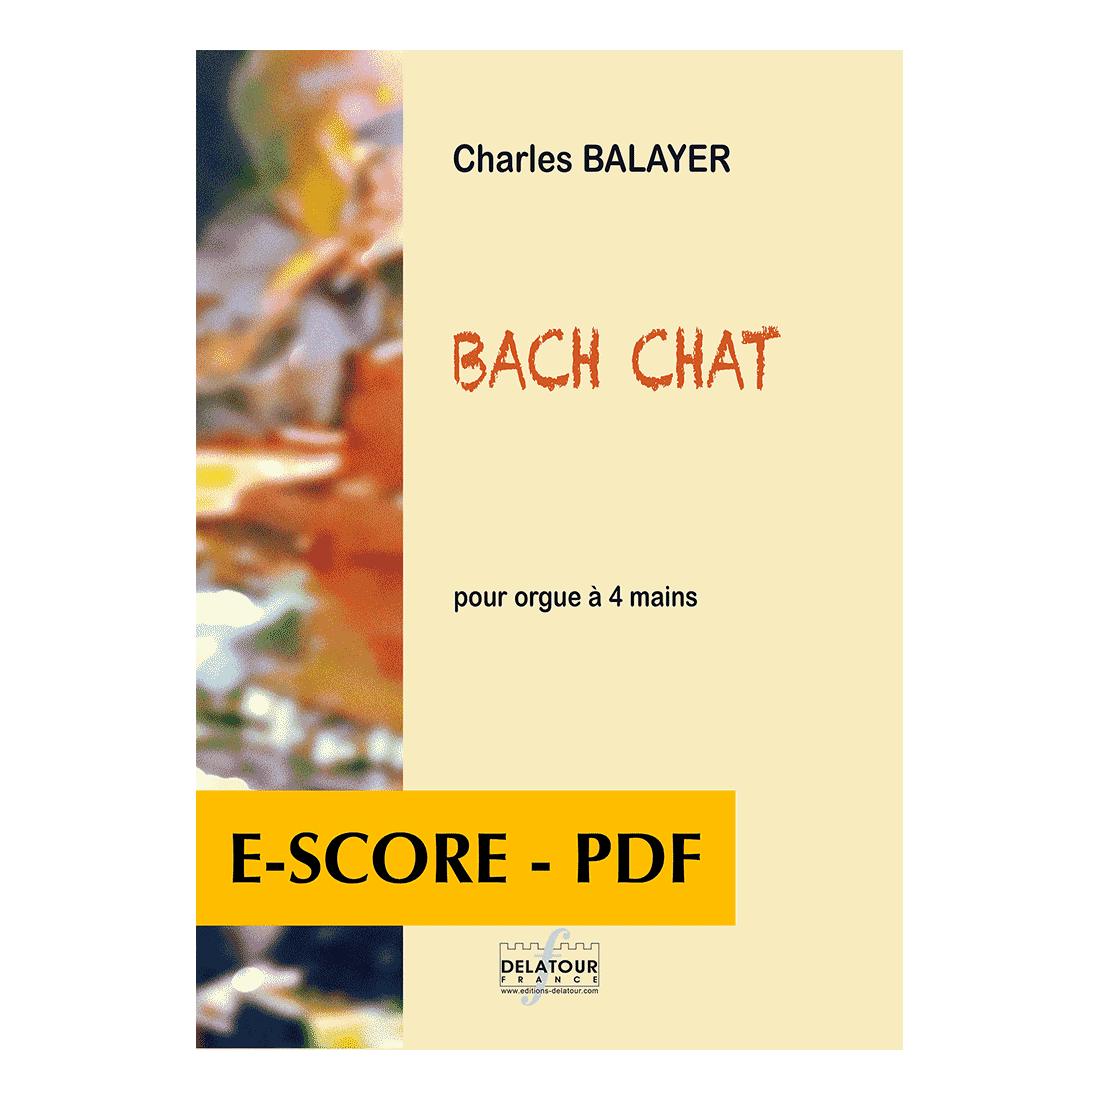 Bach Chat pour orgue à 4 mains - E-score PDF